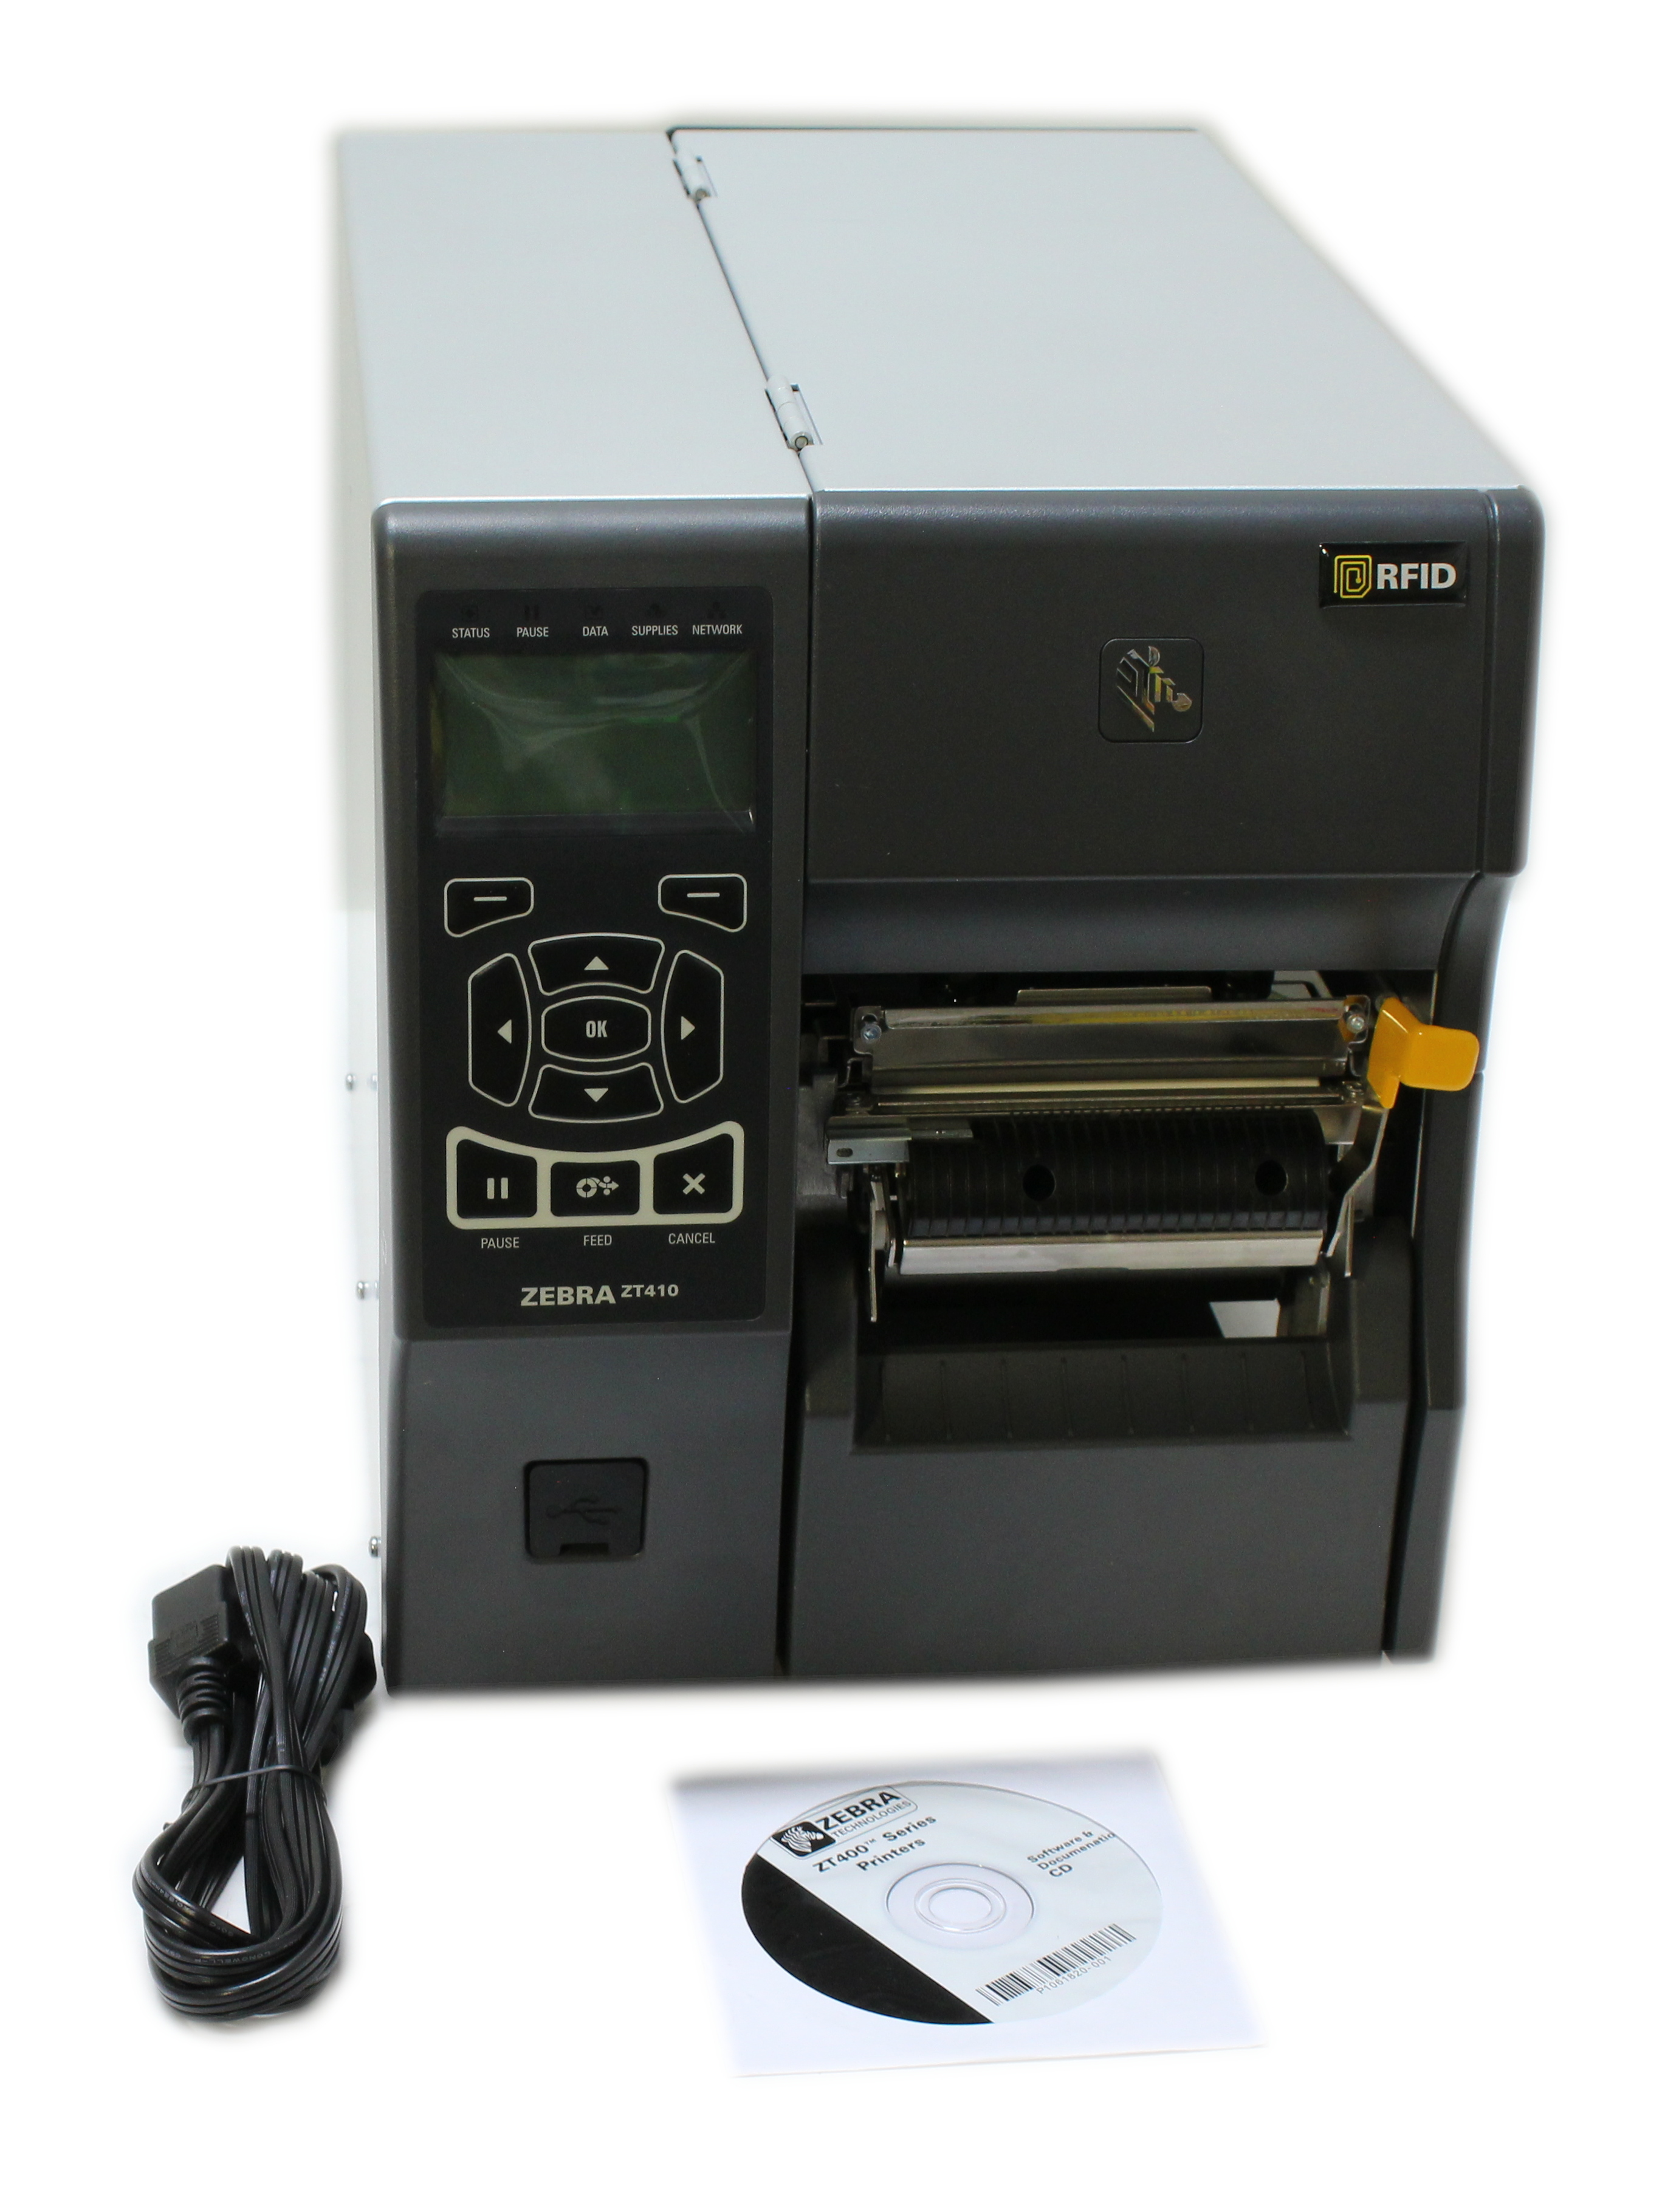 Zebra ZT410 Label Printer Monochrome Direct Thermal WiFi LAN ZT41042-T310062A